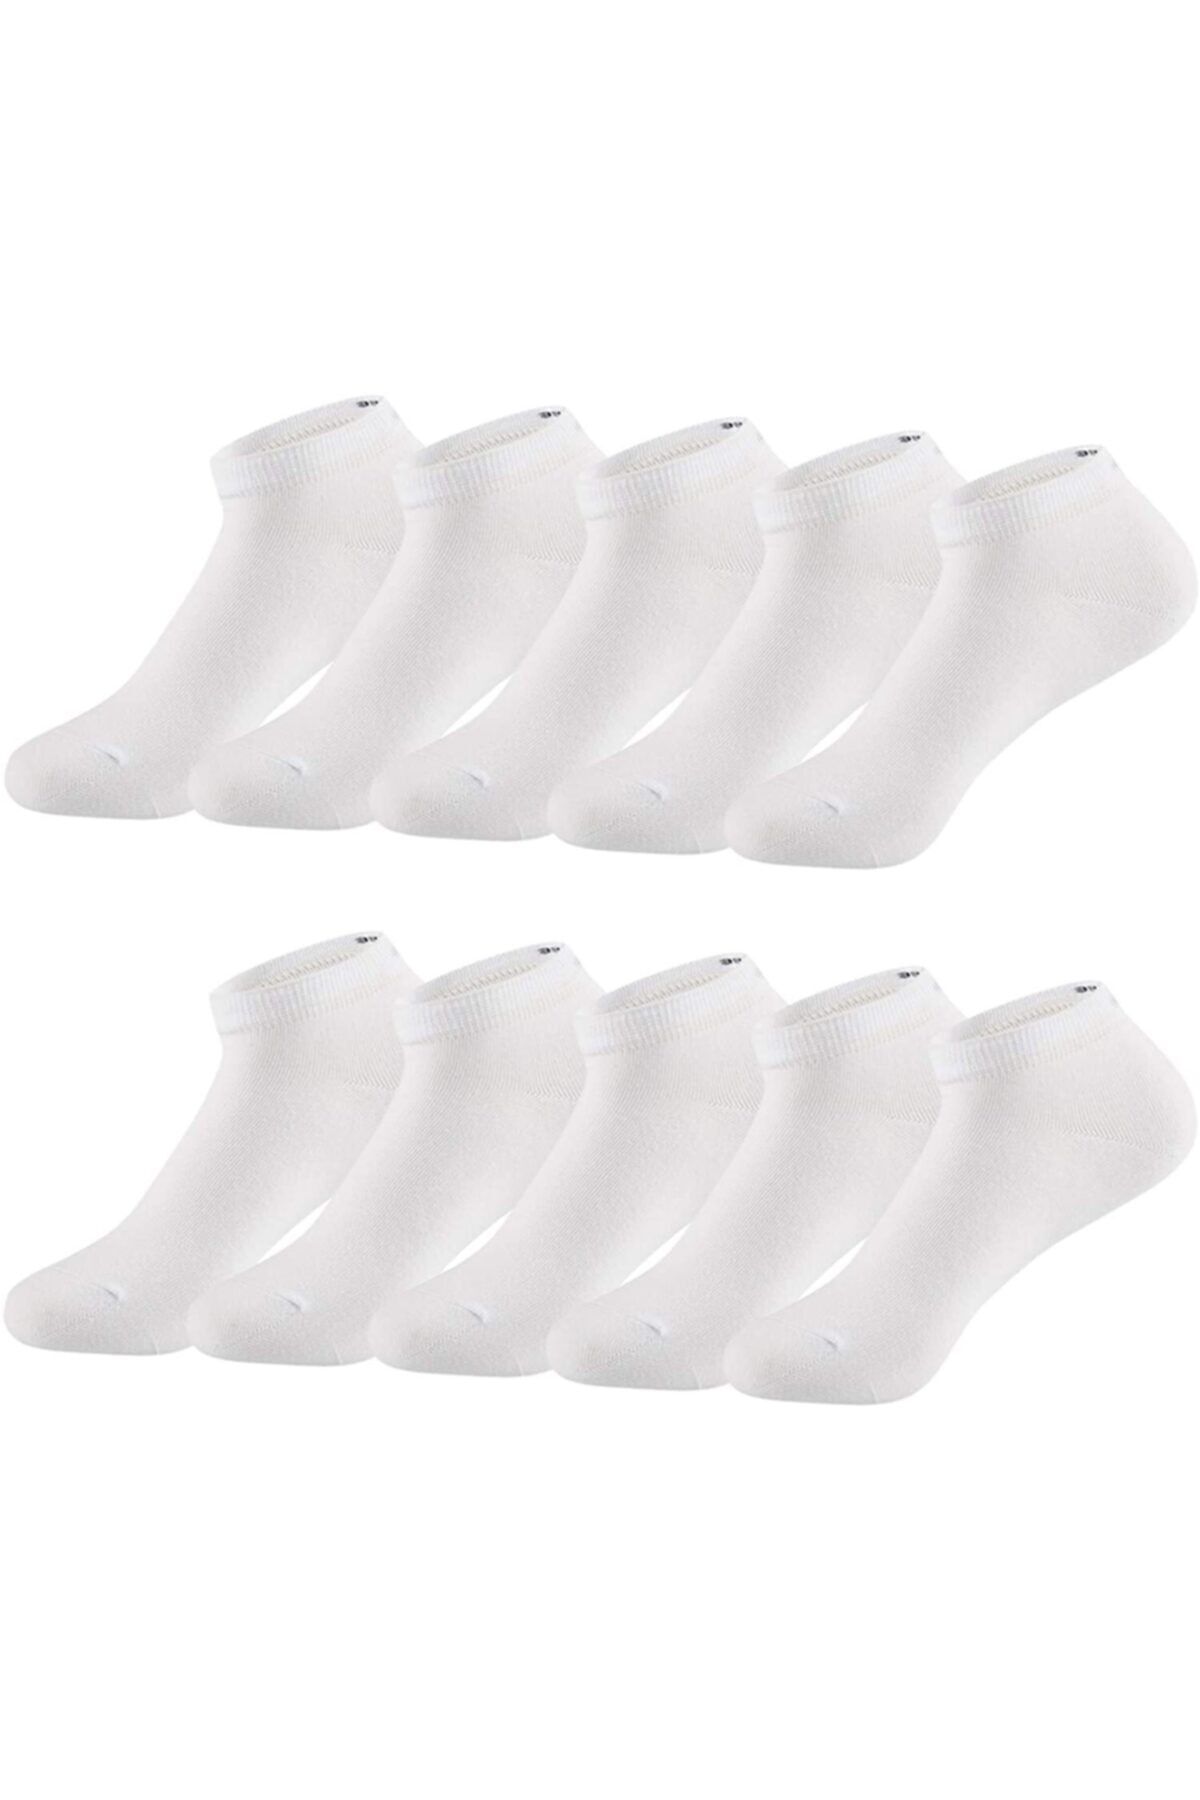 Genel Markalar 10 Çift Bilek Boy Düz Beyaz Patik Pamuklu Çorap